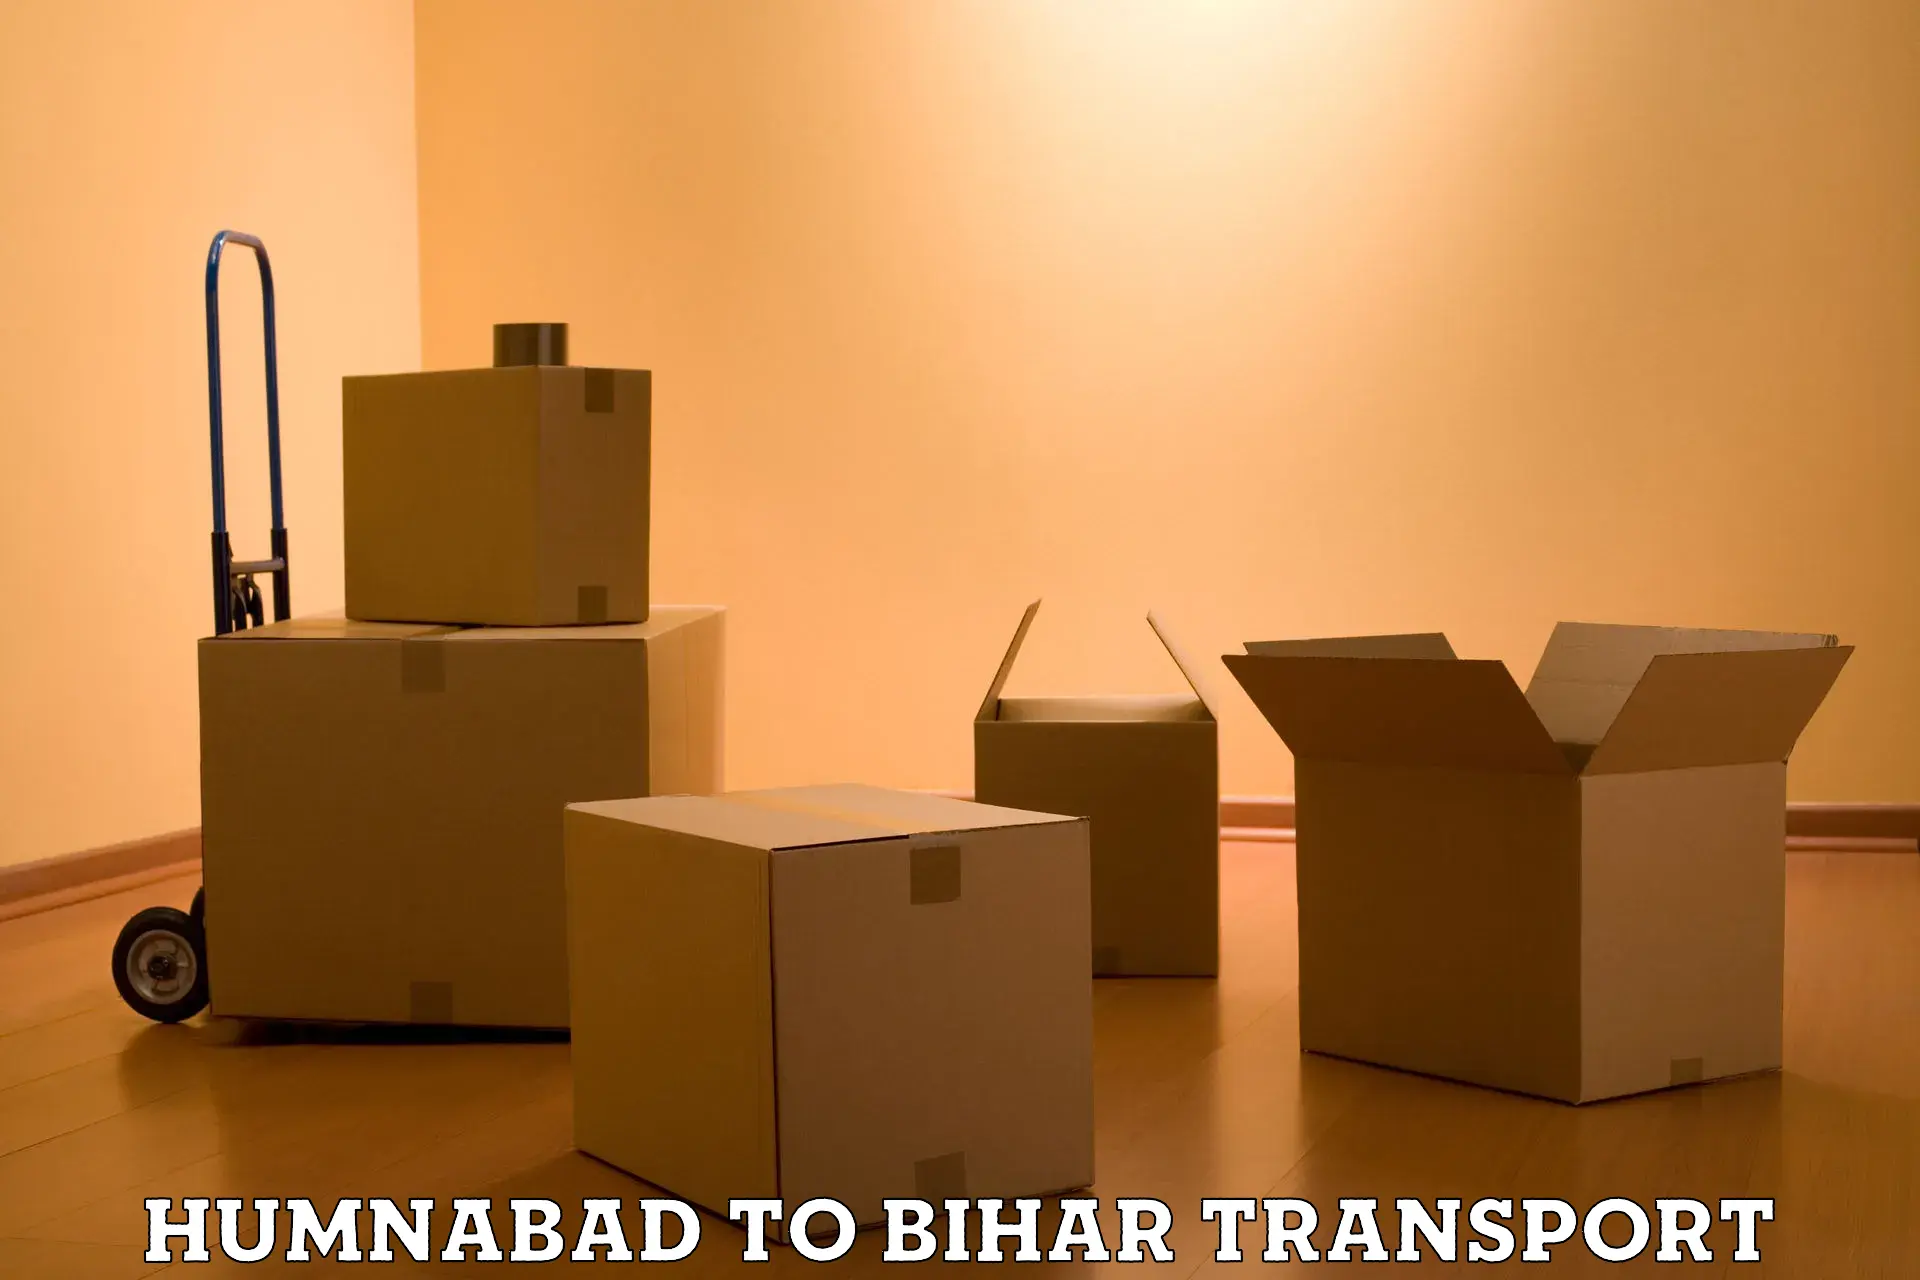 Transportation solution services Humnabad to Tekari